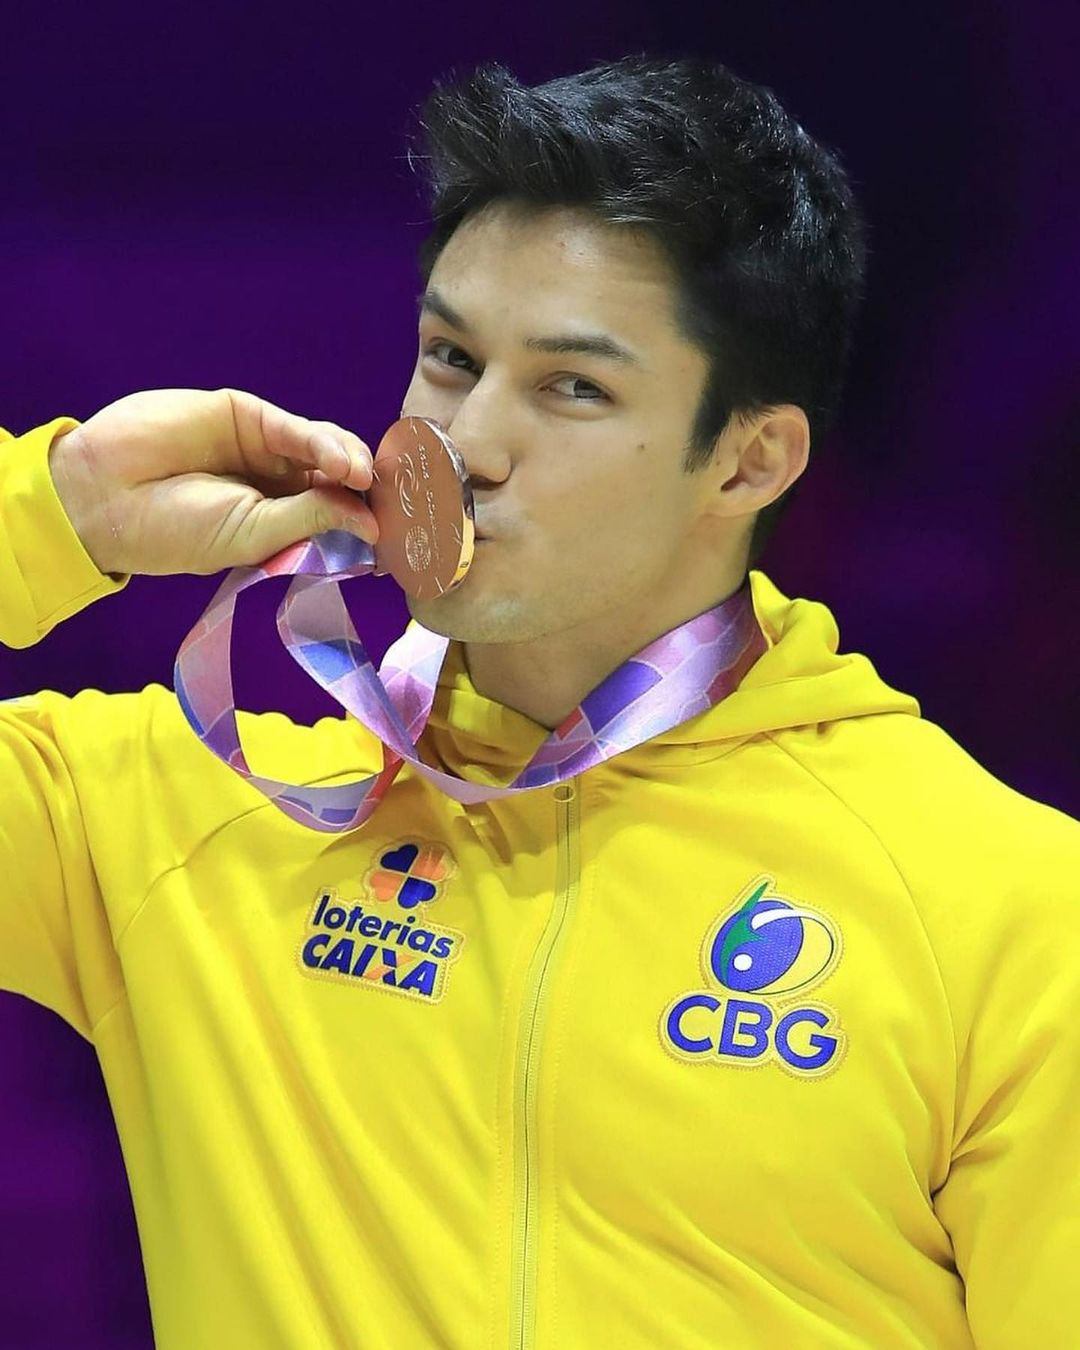 Гей-спортсмен получил 2 медали на Чемпионате мира